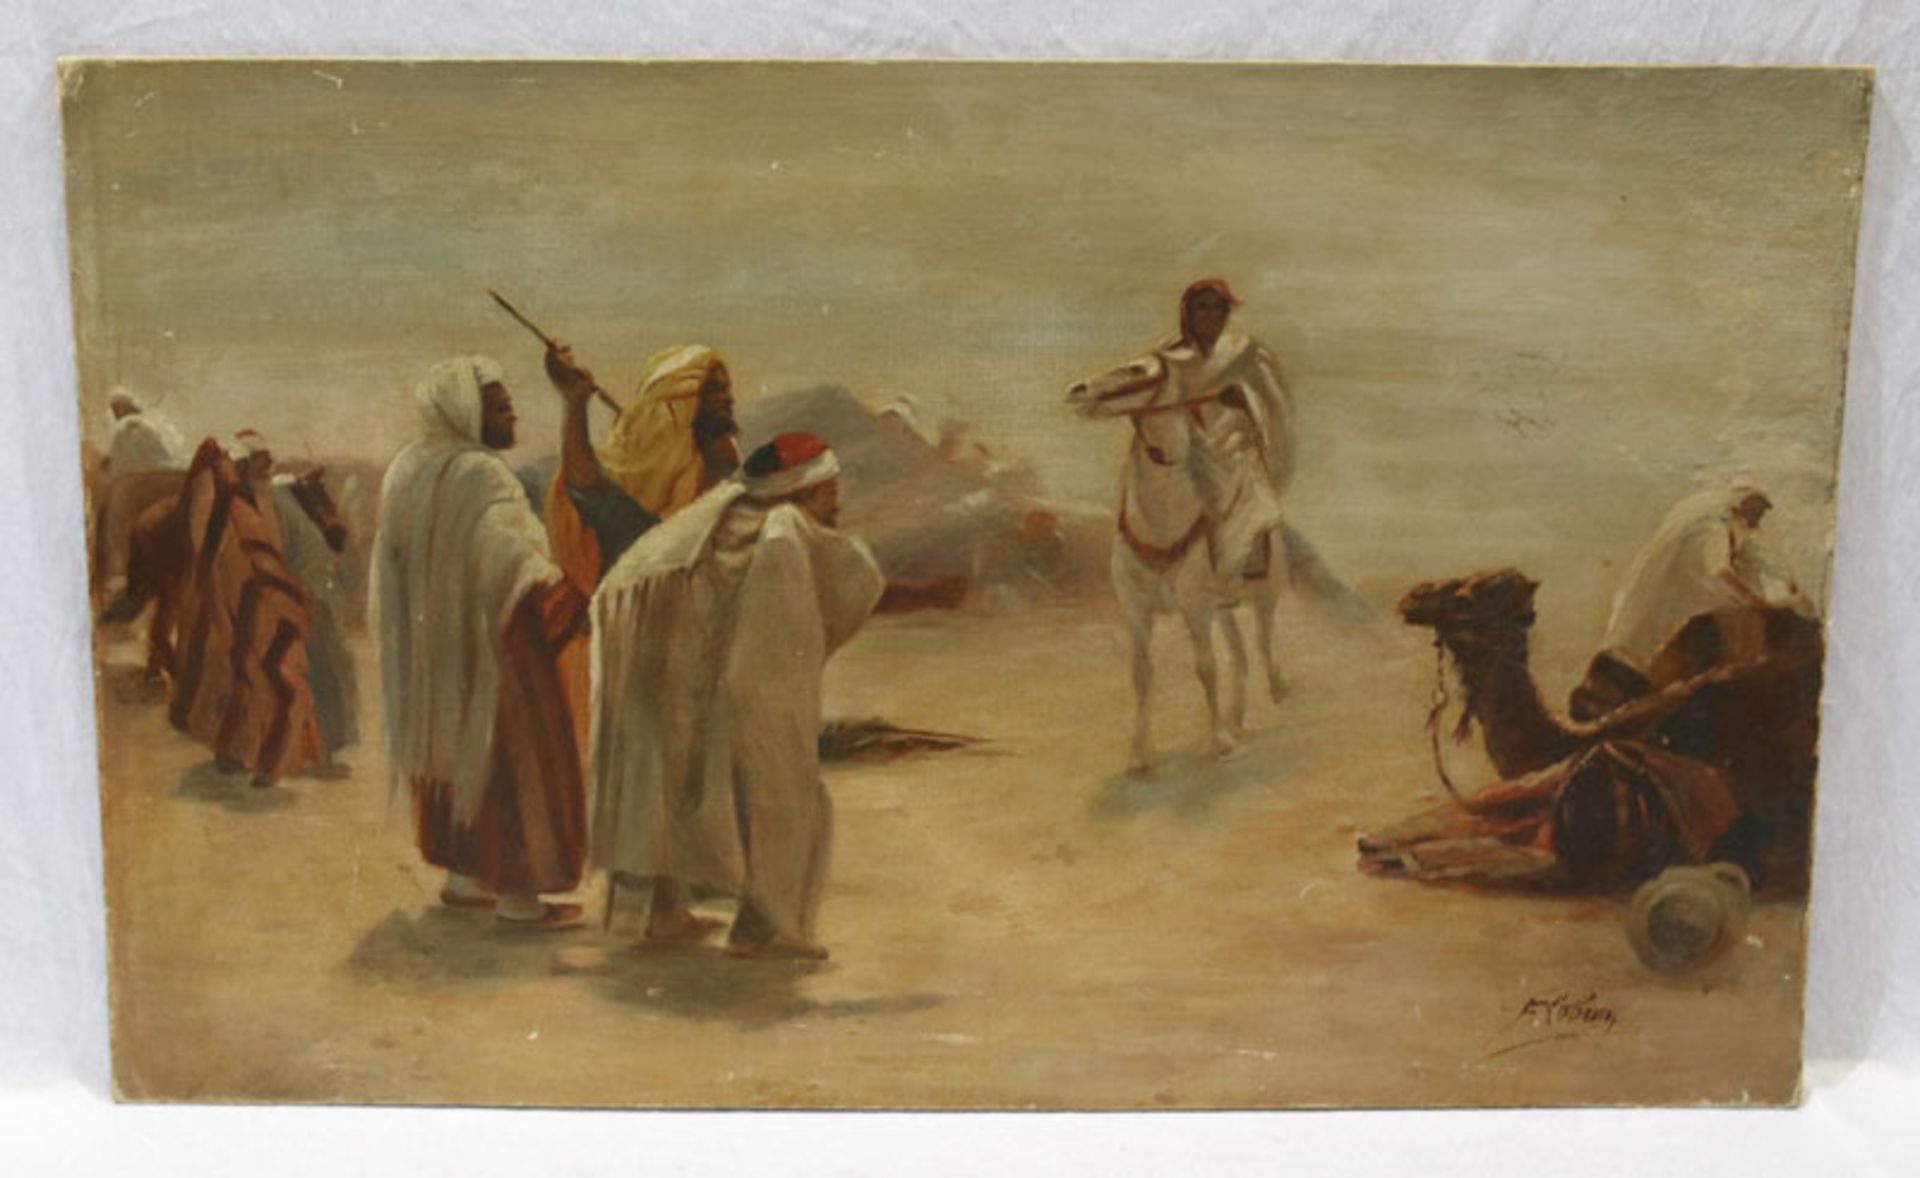 Gemälde ÖL/LW aufgeklebt 'Araber mit Kamel und Pferd', signiert F. Lebrun, Bildoberfläche teils